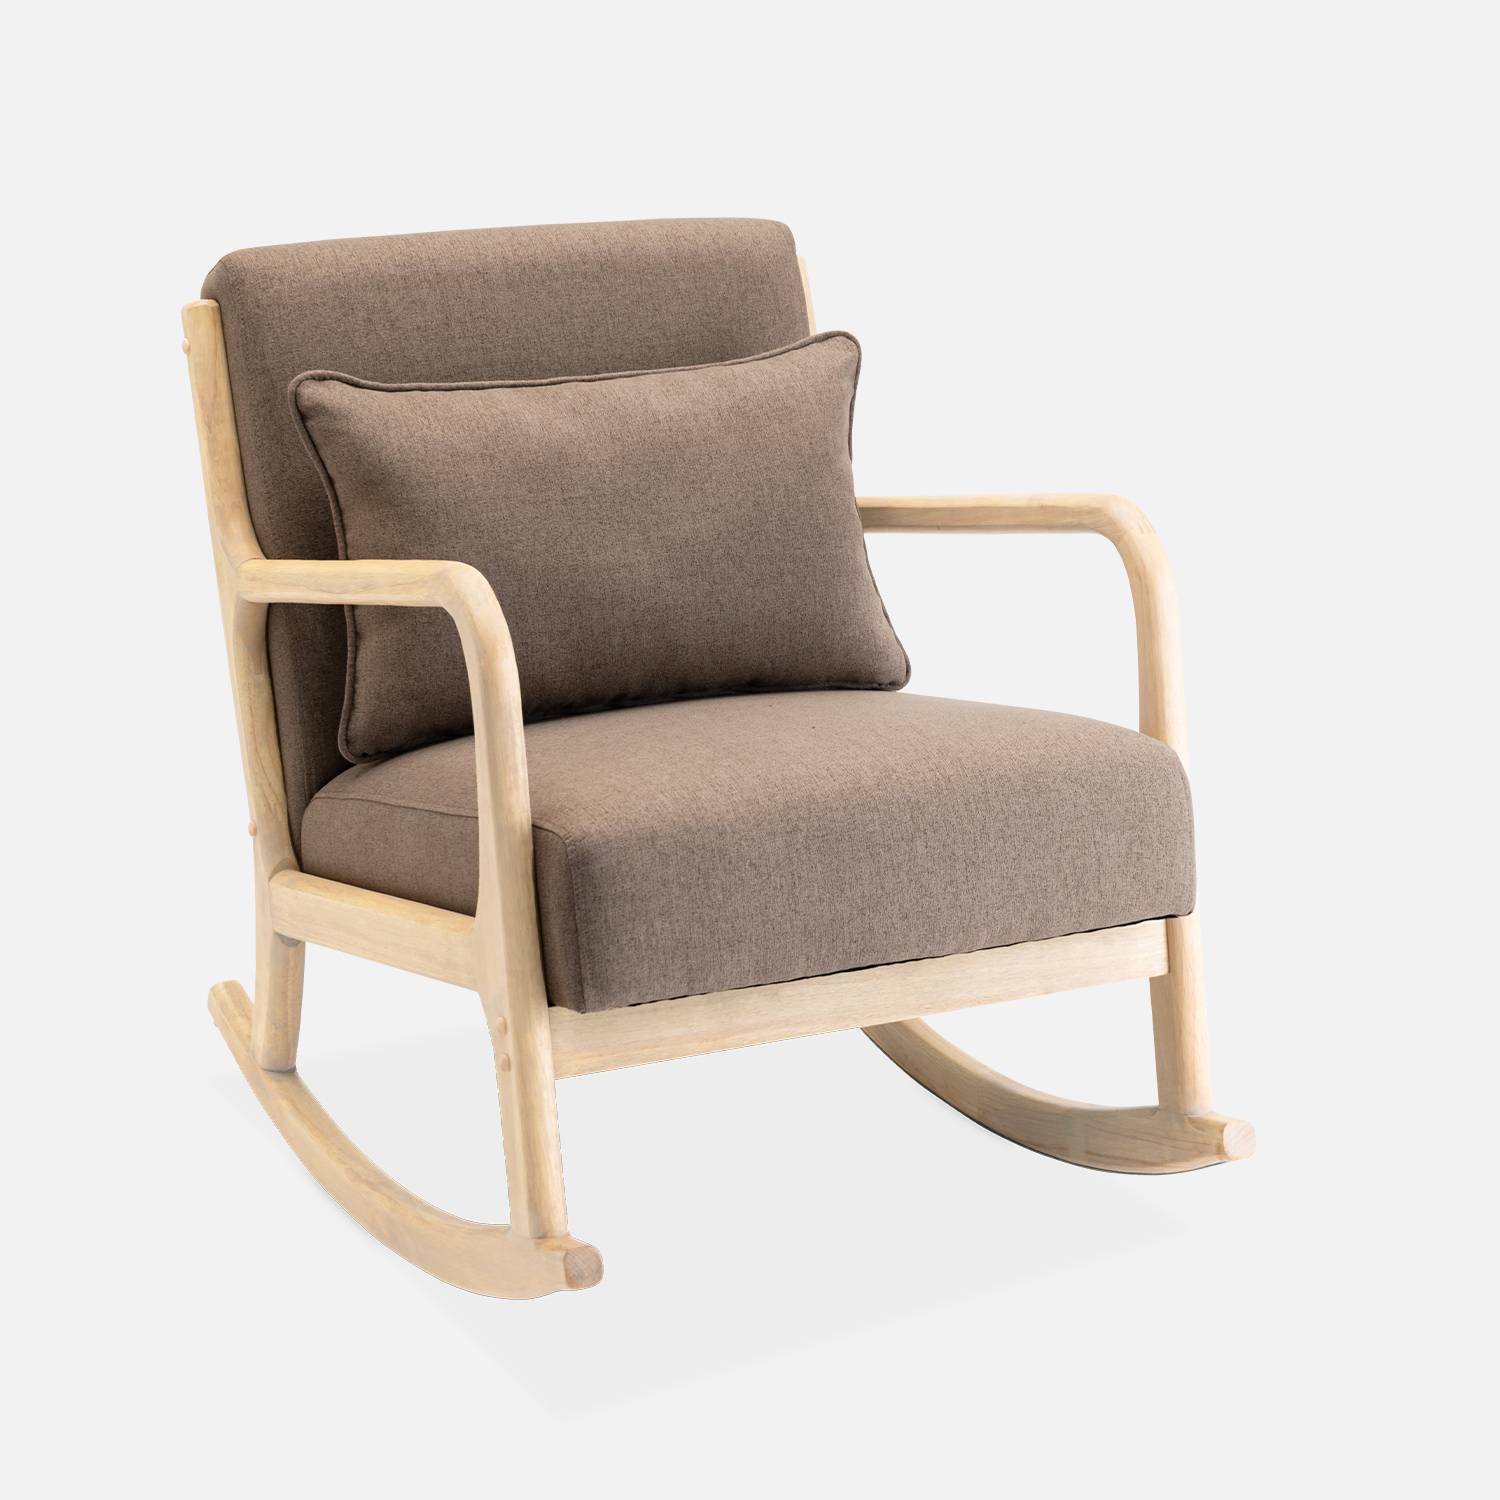 Fauteuil à bascule marron design en bois et tissu, 1 place, rocking chair scandinave Photo1